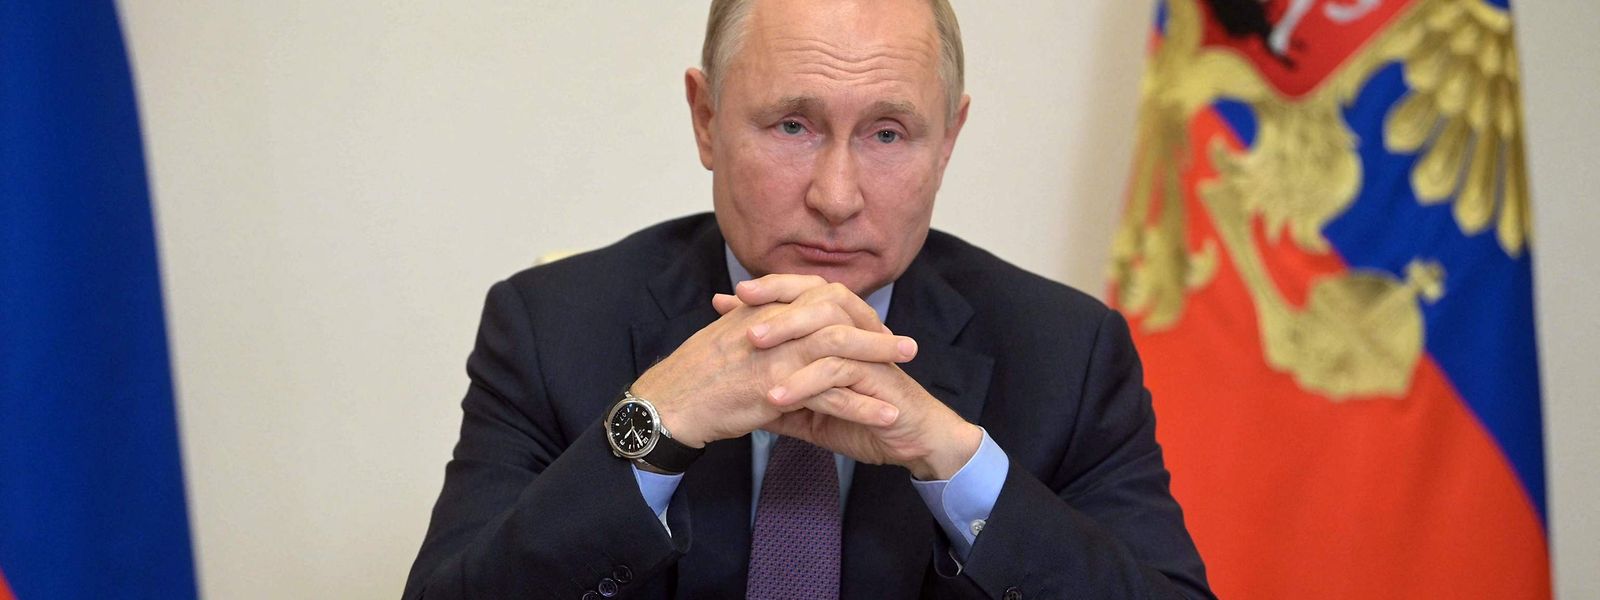 Indigitação de Natalia Poklonskaïa fora feita pelo Presidente russo, Vladimir Putin.